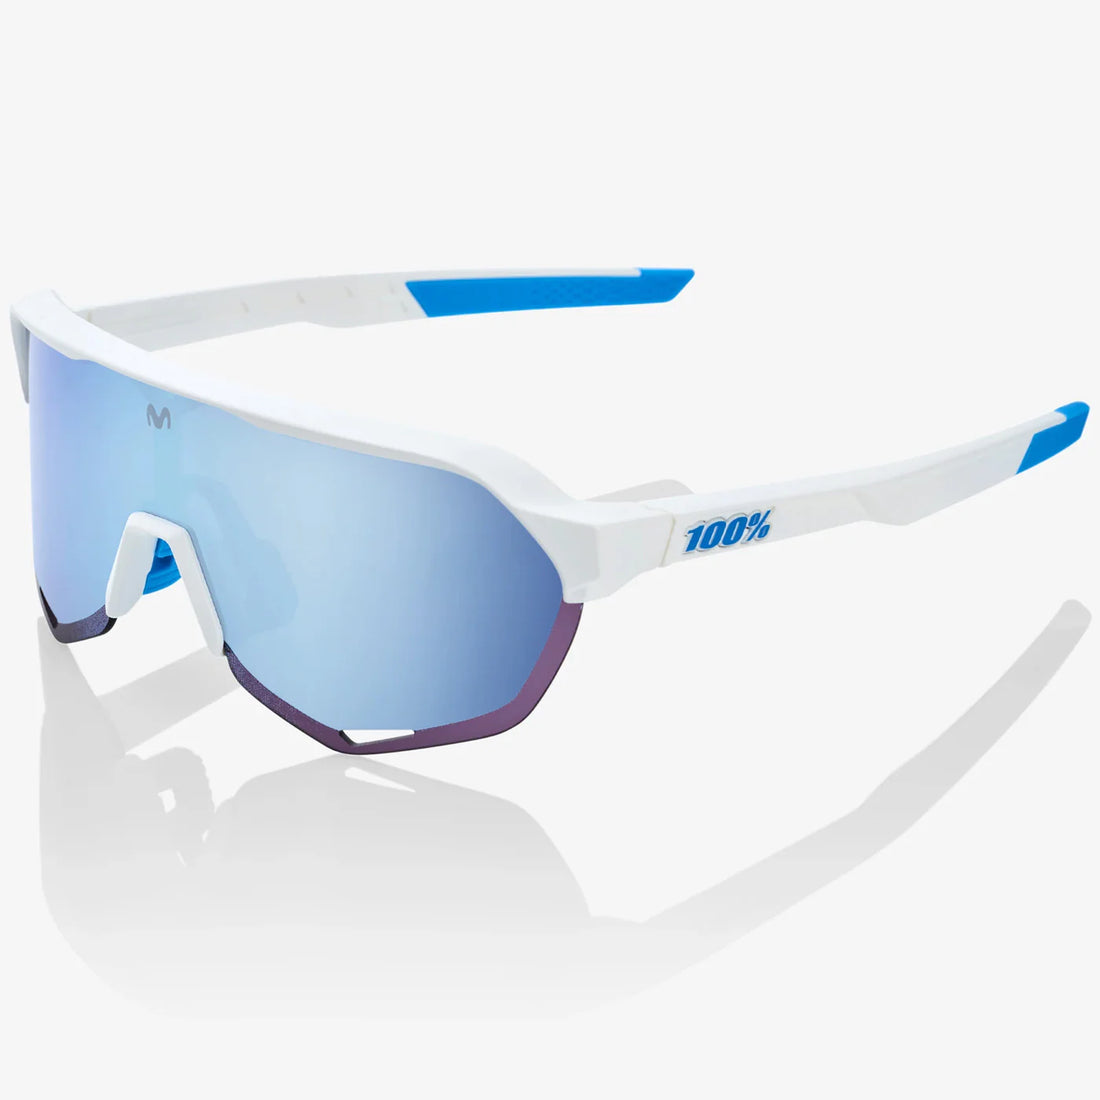 T2 - Gafas de sol del equipo Movistar